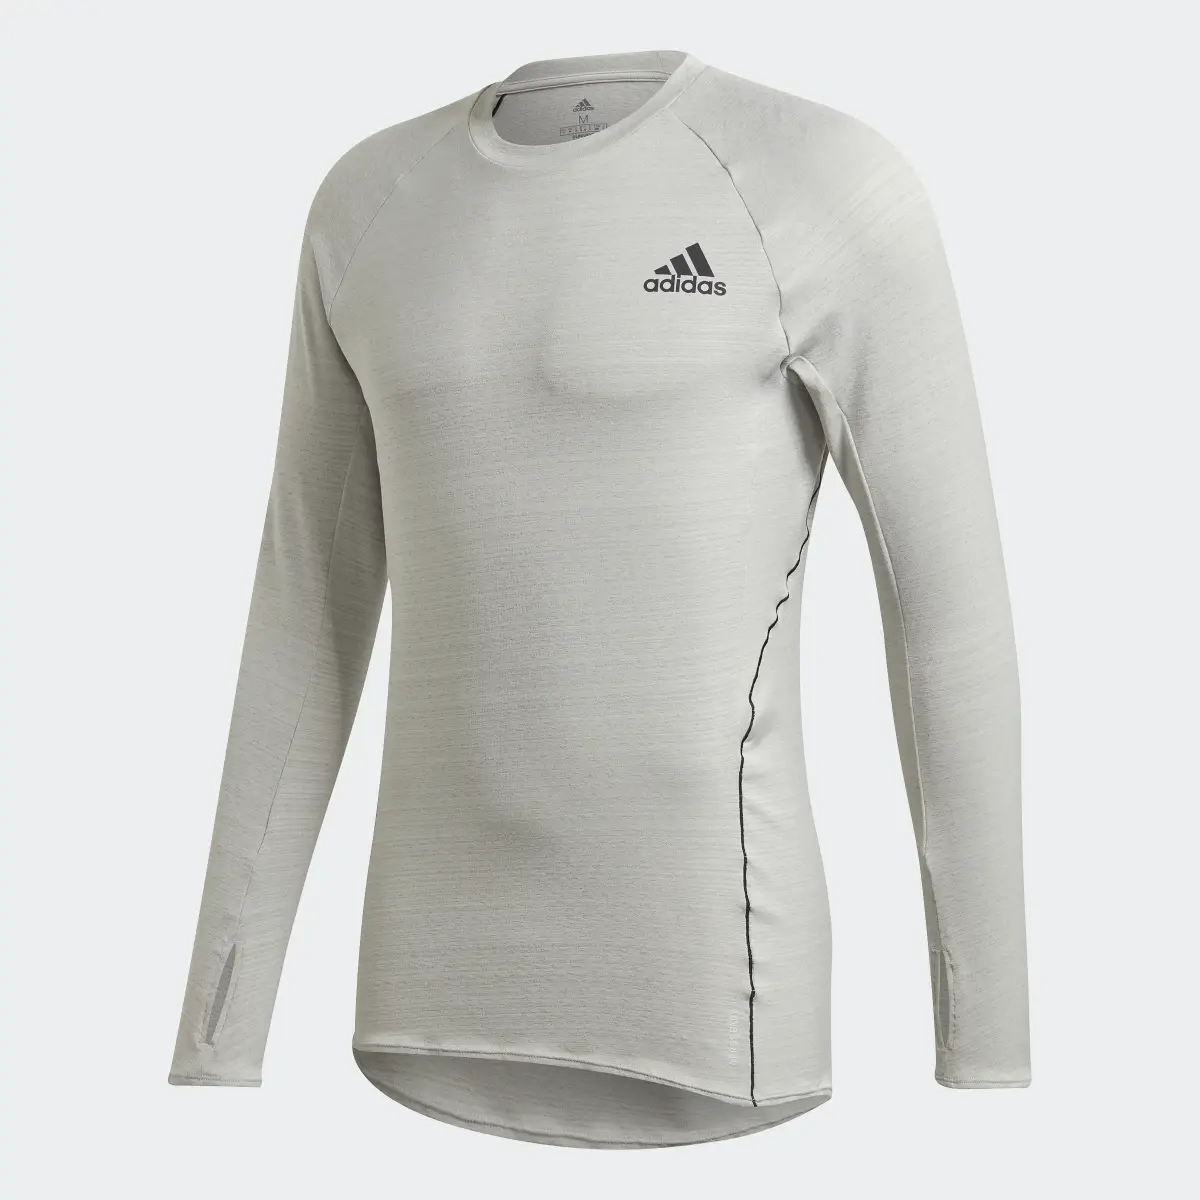 Adidas T-shirt Runner Long Sleeve. 1